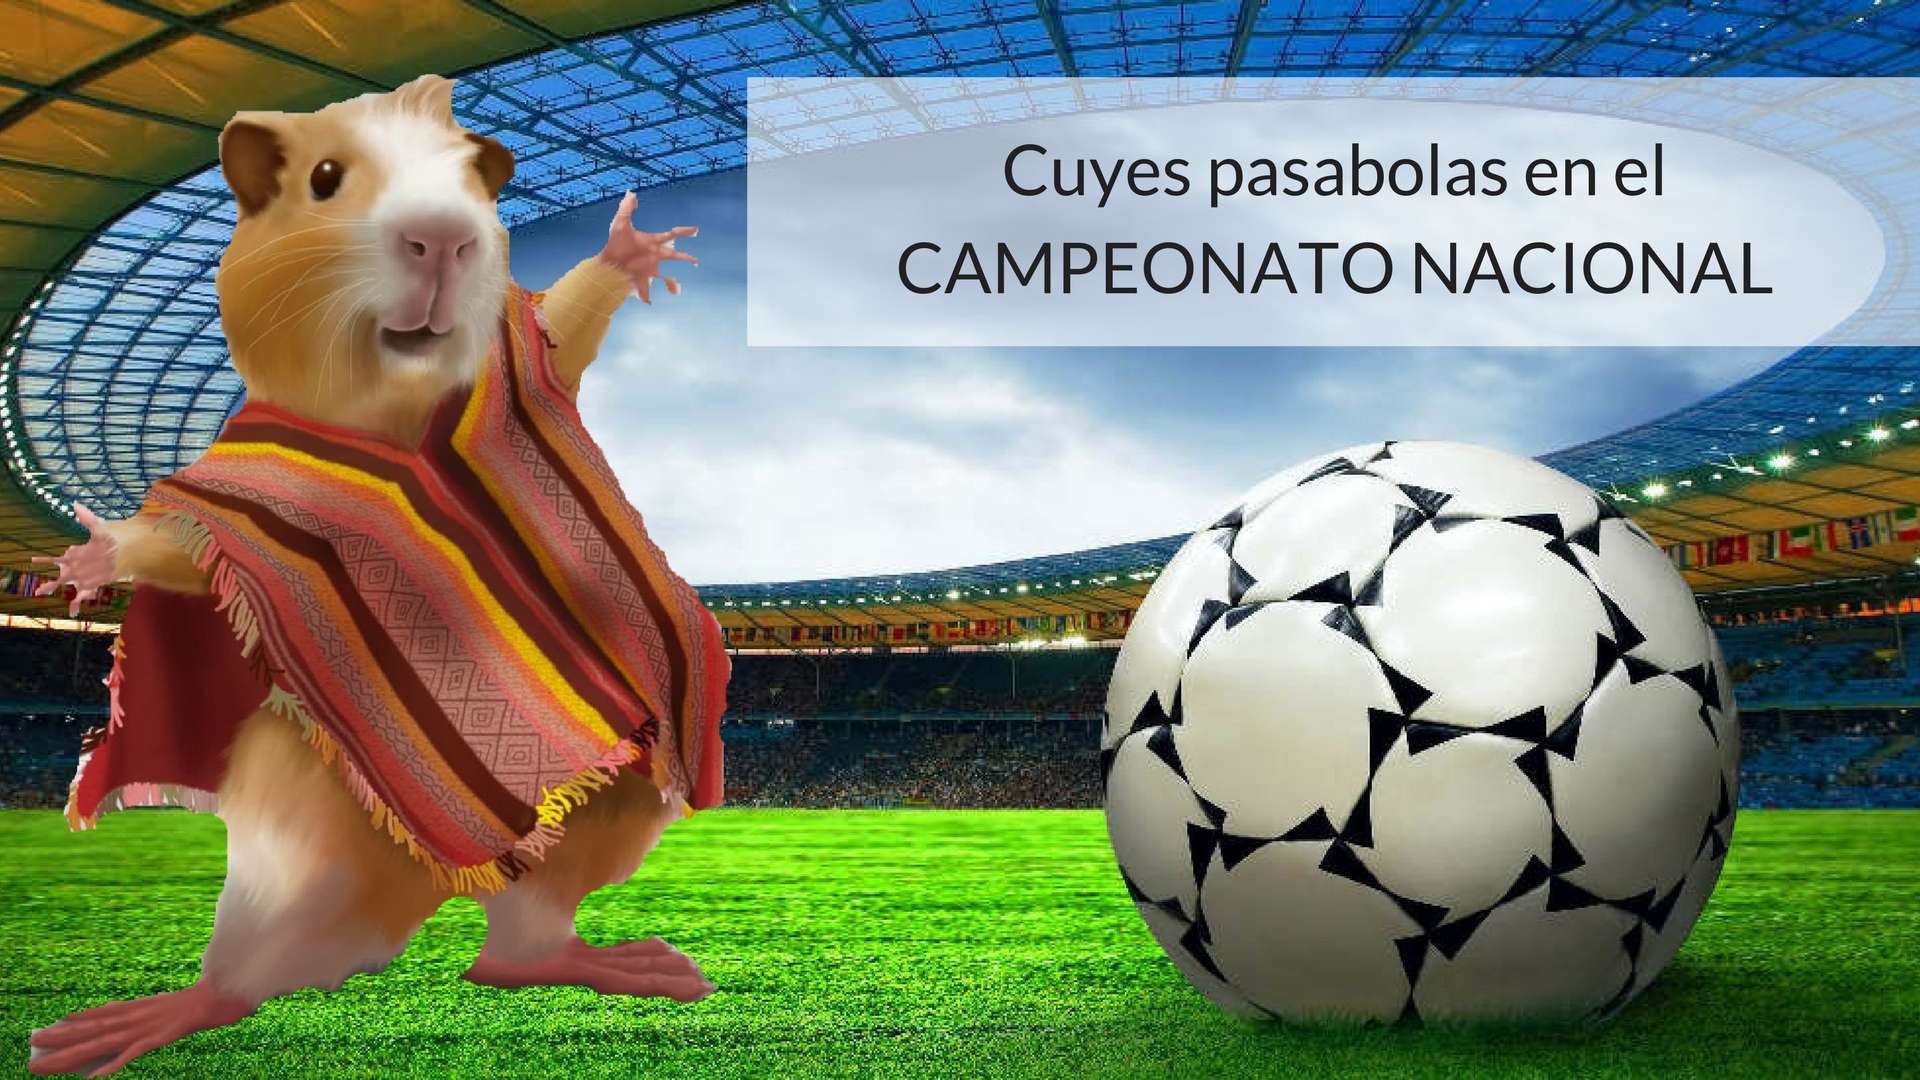 Campeonato Ecuatoriano de fútbol usará cuyes como pasa-bolas